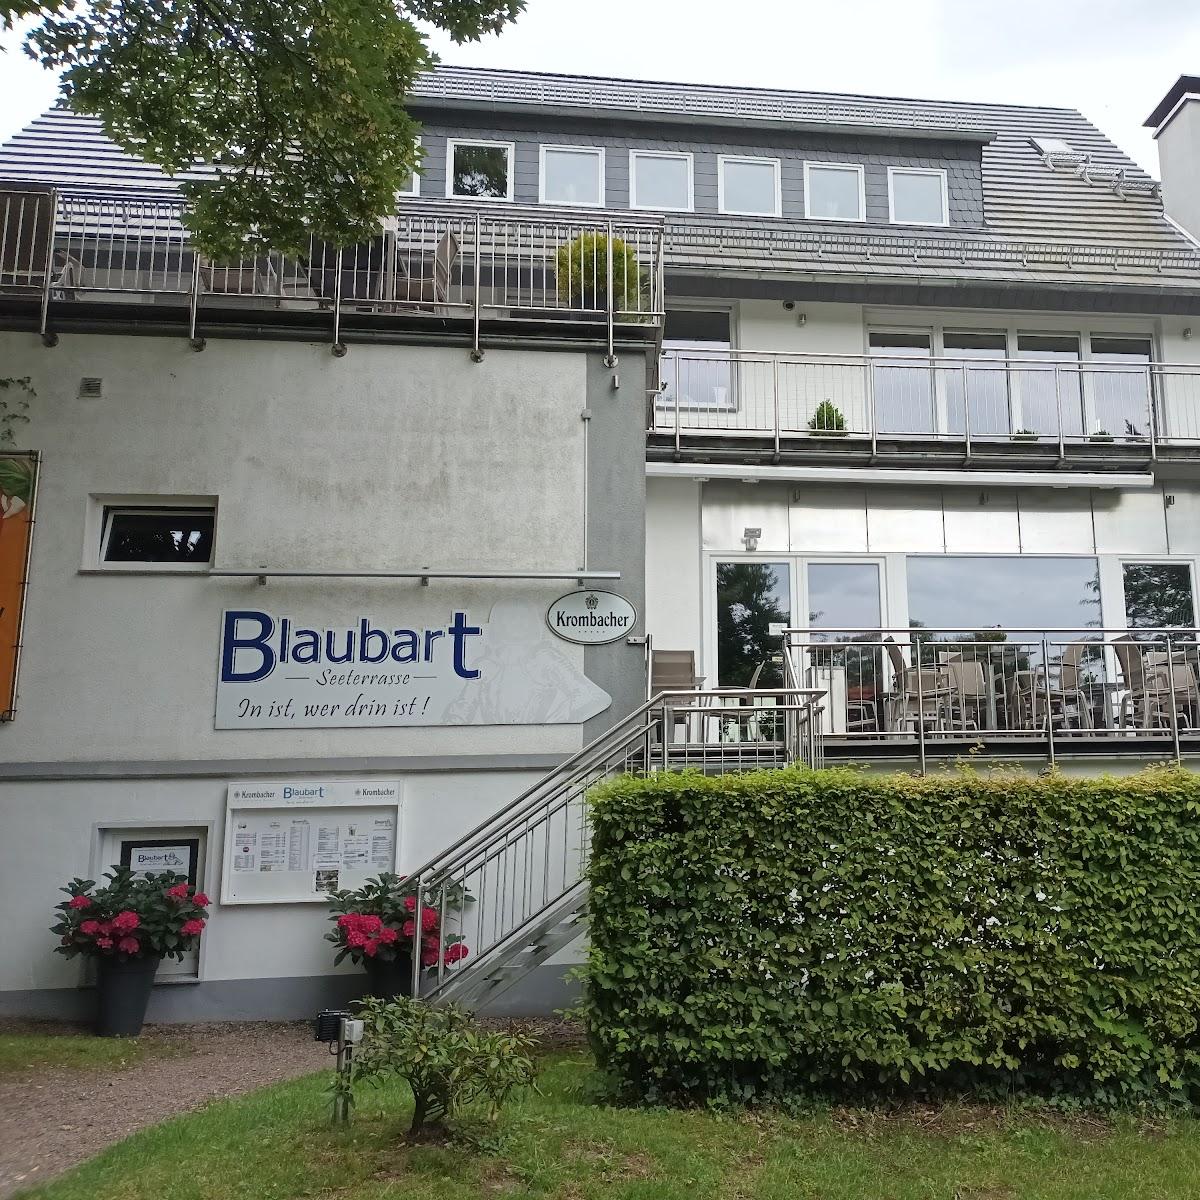 Restaurant "Blaubart Seeterrasse" in Horn-Bad Meinberg